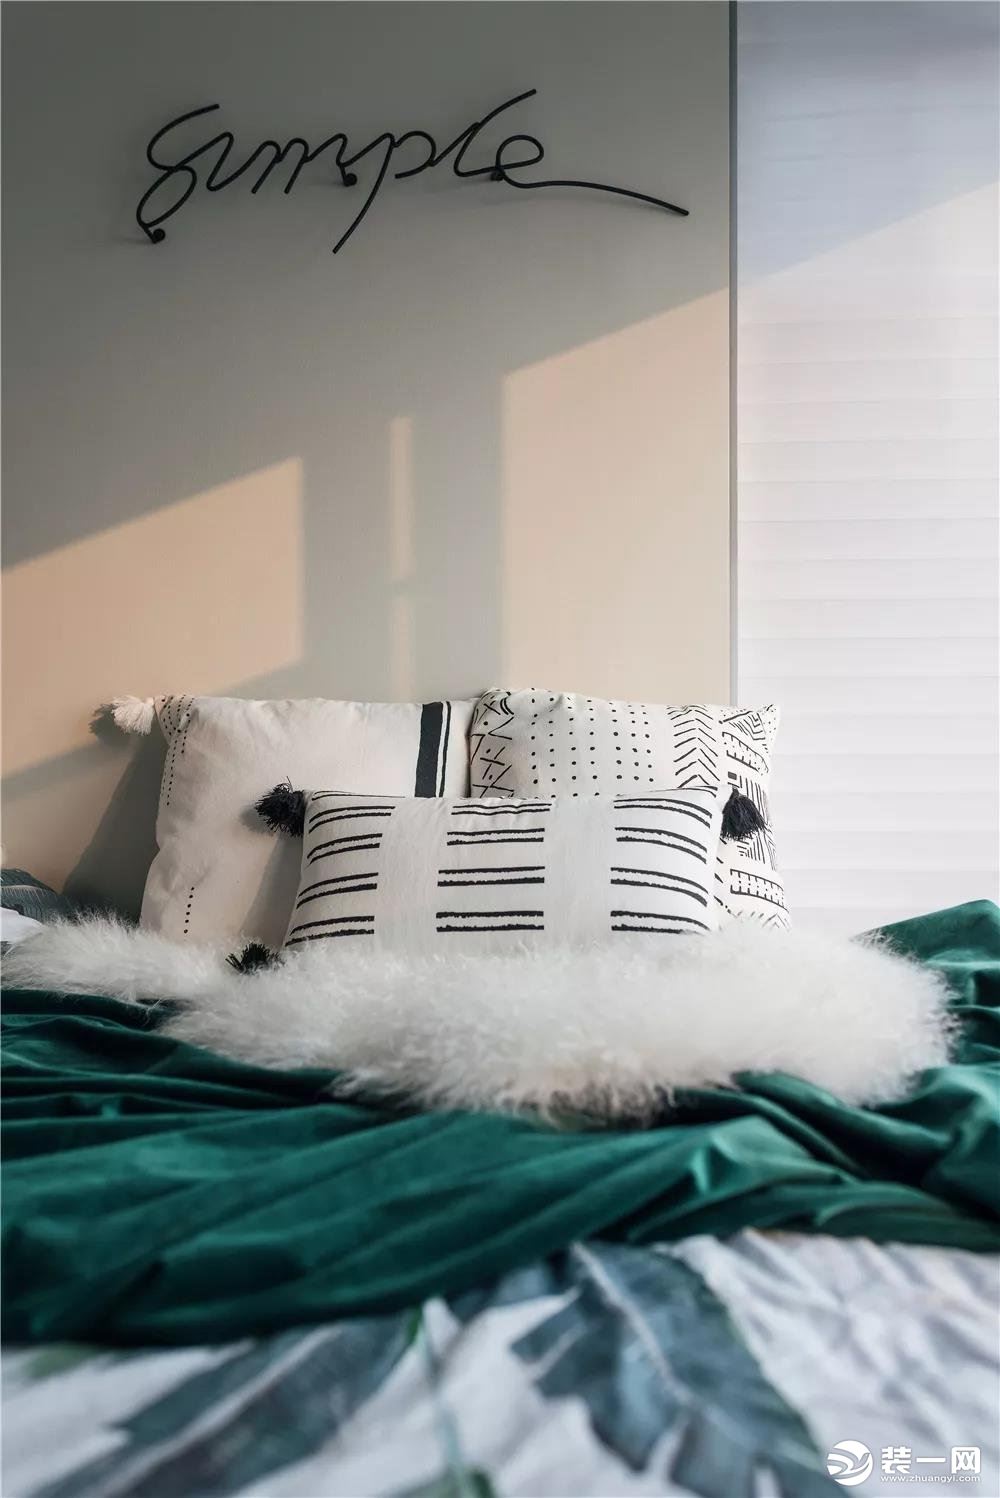 白色和绿色搭配，毛绒绒的枕头，让人忍不住想窝在床上一整天。